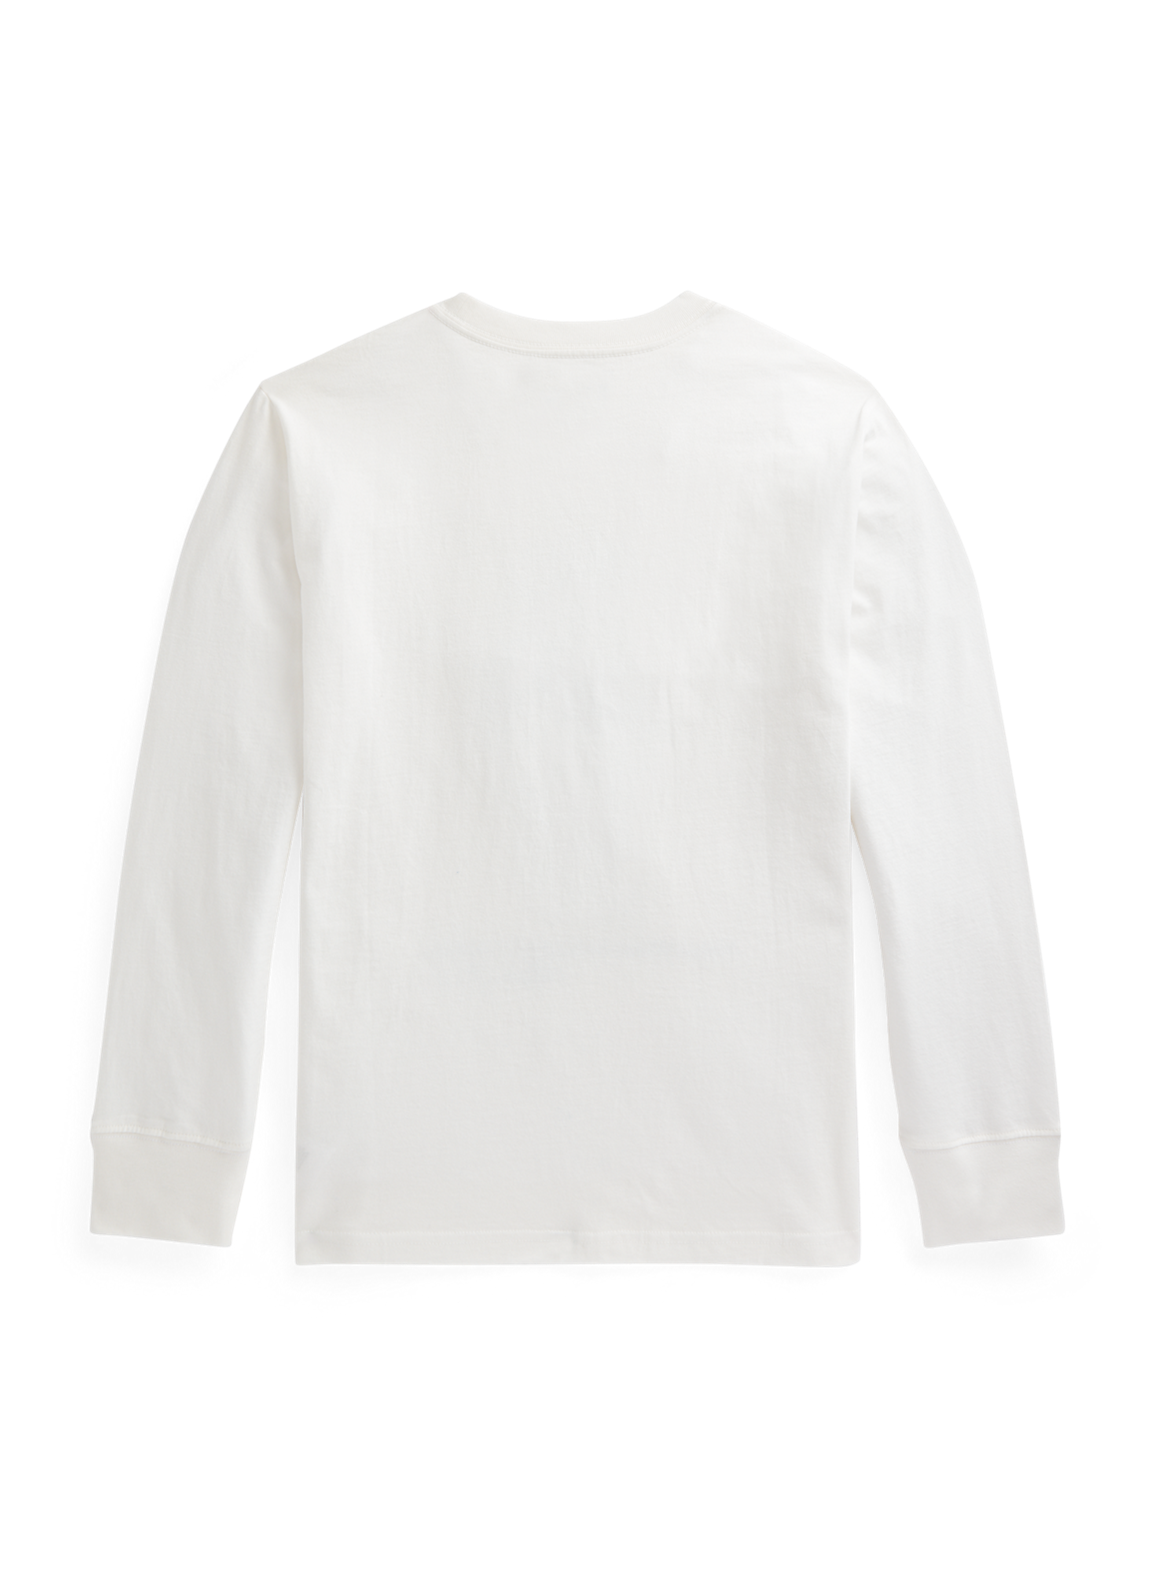 Polo ベア コットン ロングスリーブ Tシャツ Tシャツ/ロンT/半袖 